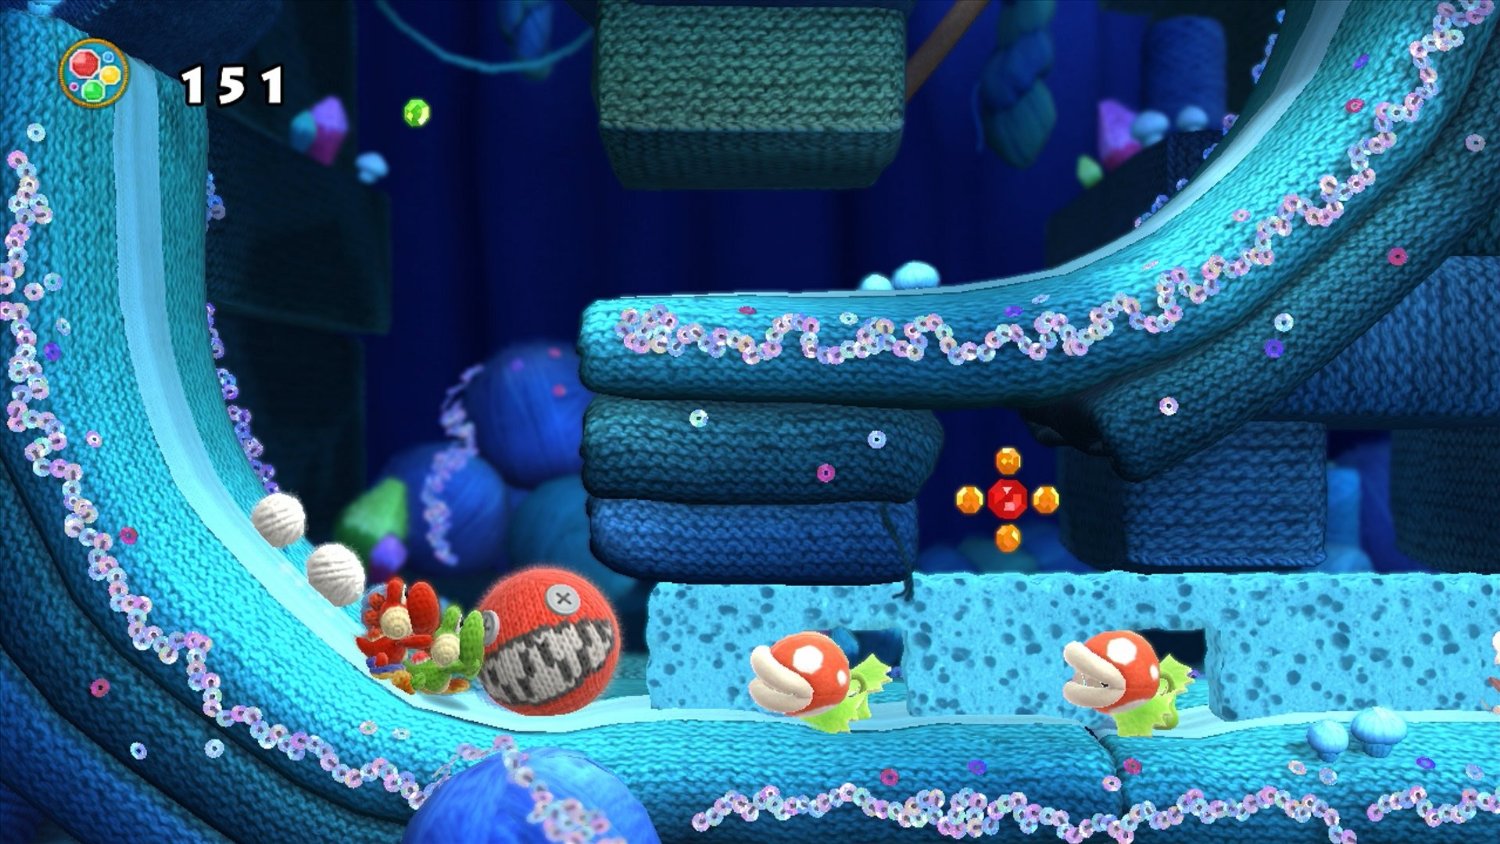 Yoshi’s Woolly World Wii U Review Screenshot 3